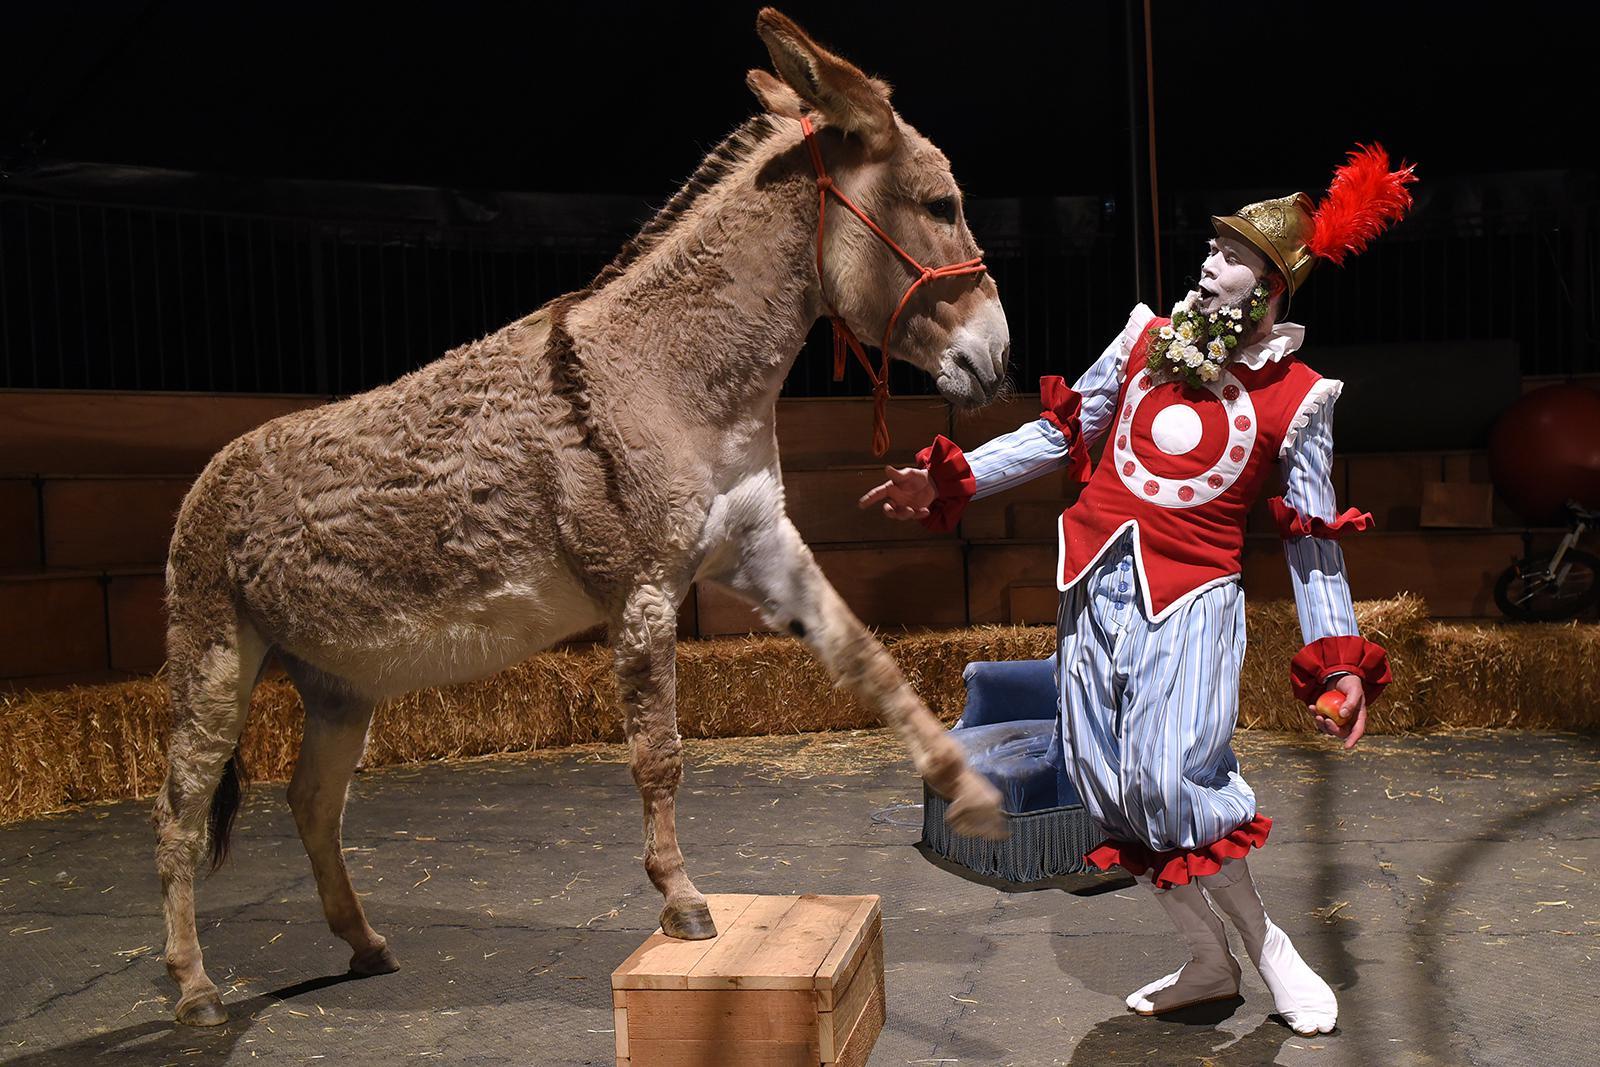 La "Chanson de Roland" version ménagerie de cirque sera proposée au public de Poésie en arrosoir, à Evologia.